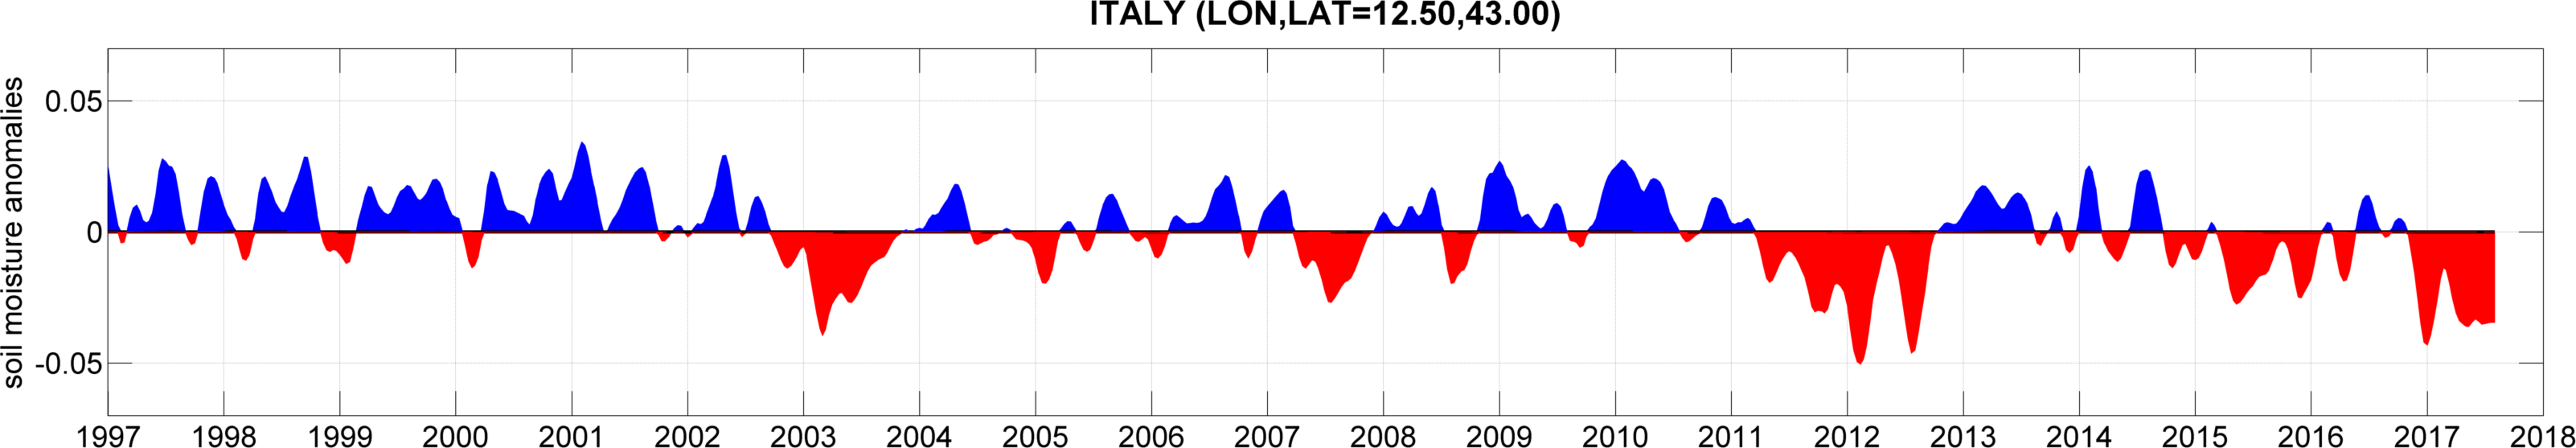 Italy soil moisture anomalies